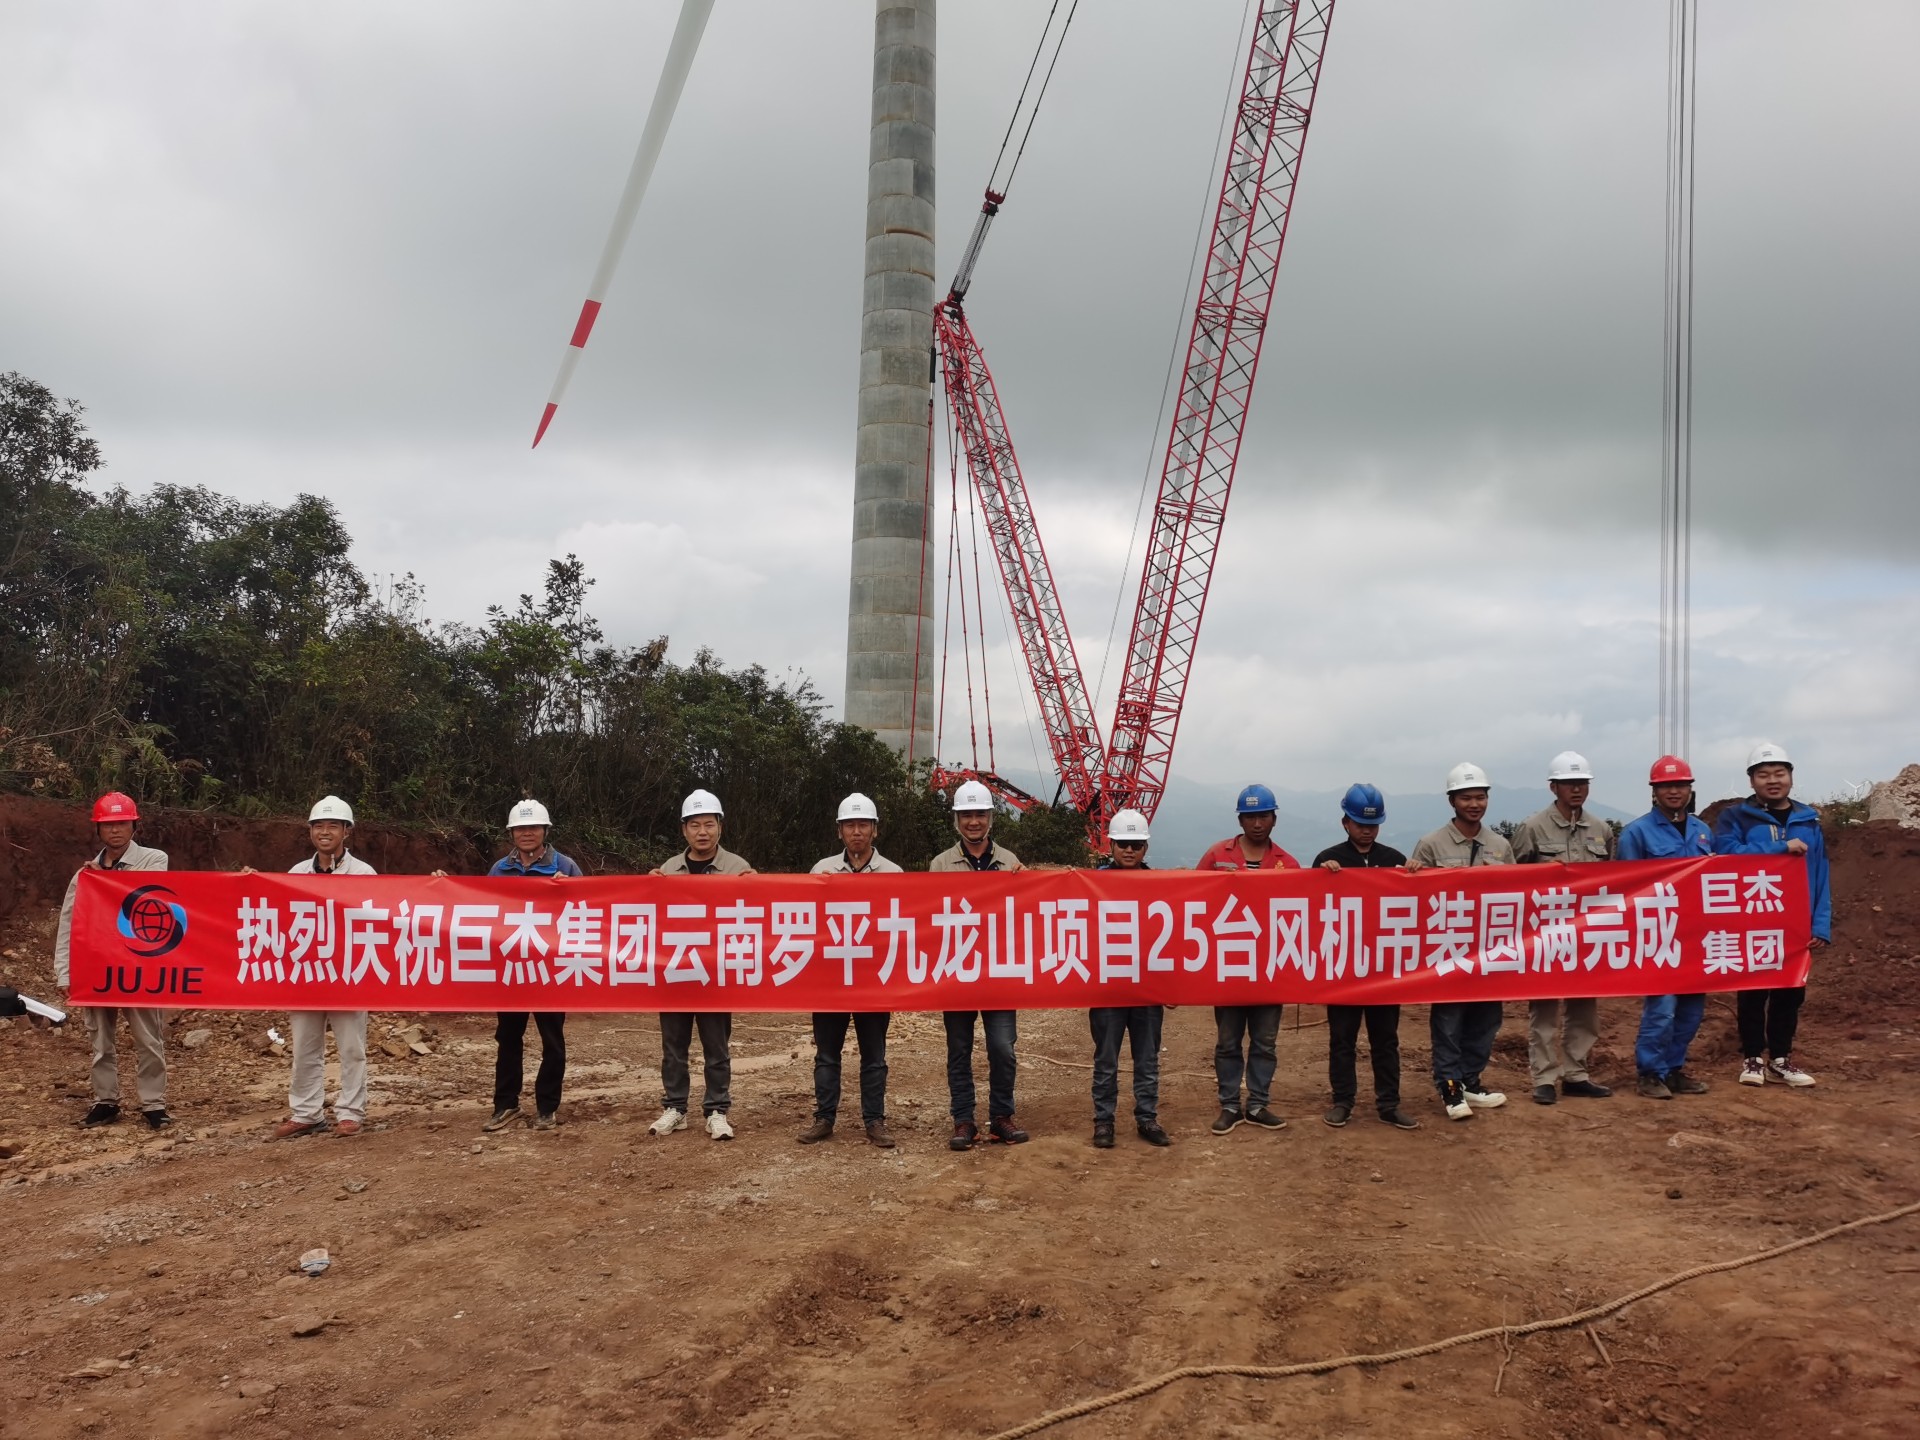 巨杰集团云南罗平九龙山项目25台风机吊装圆满完成